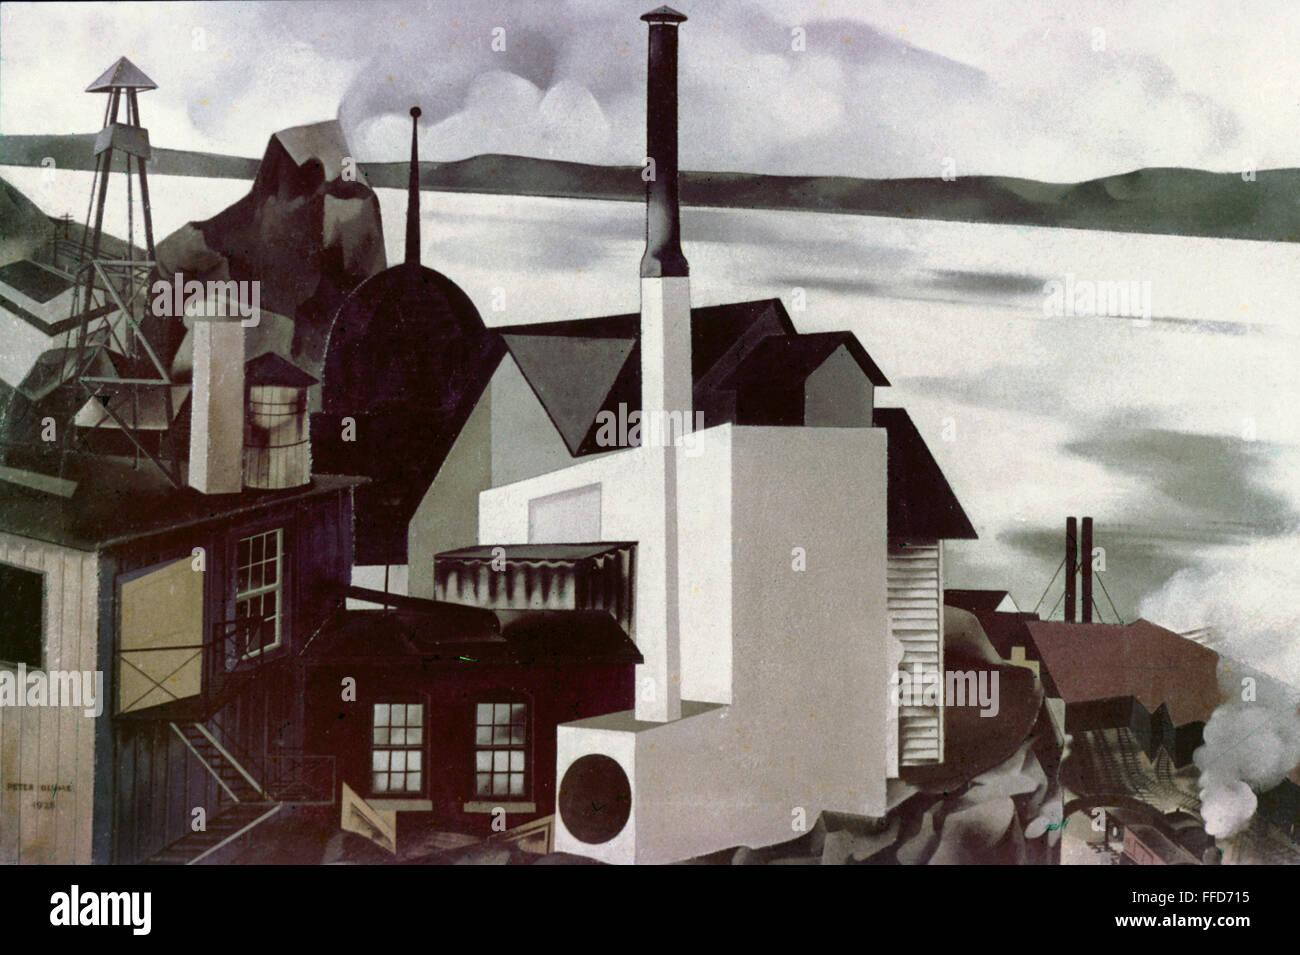 BLUME : WHITE FACTORY, 1928. /N'White Factory." Huile sur toile de Peter Blume, 1928. Usage éditorial uniquement. Banque D'Images